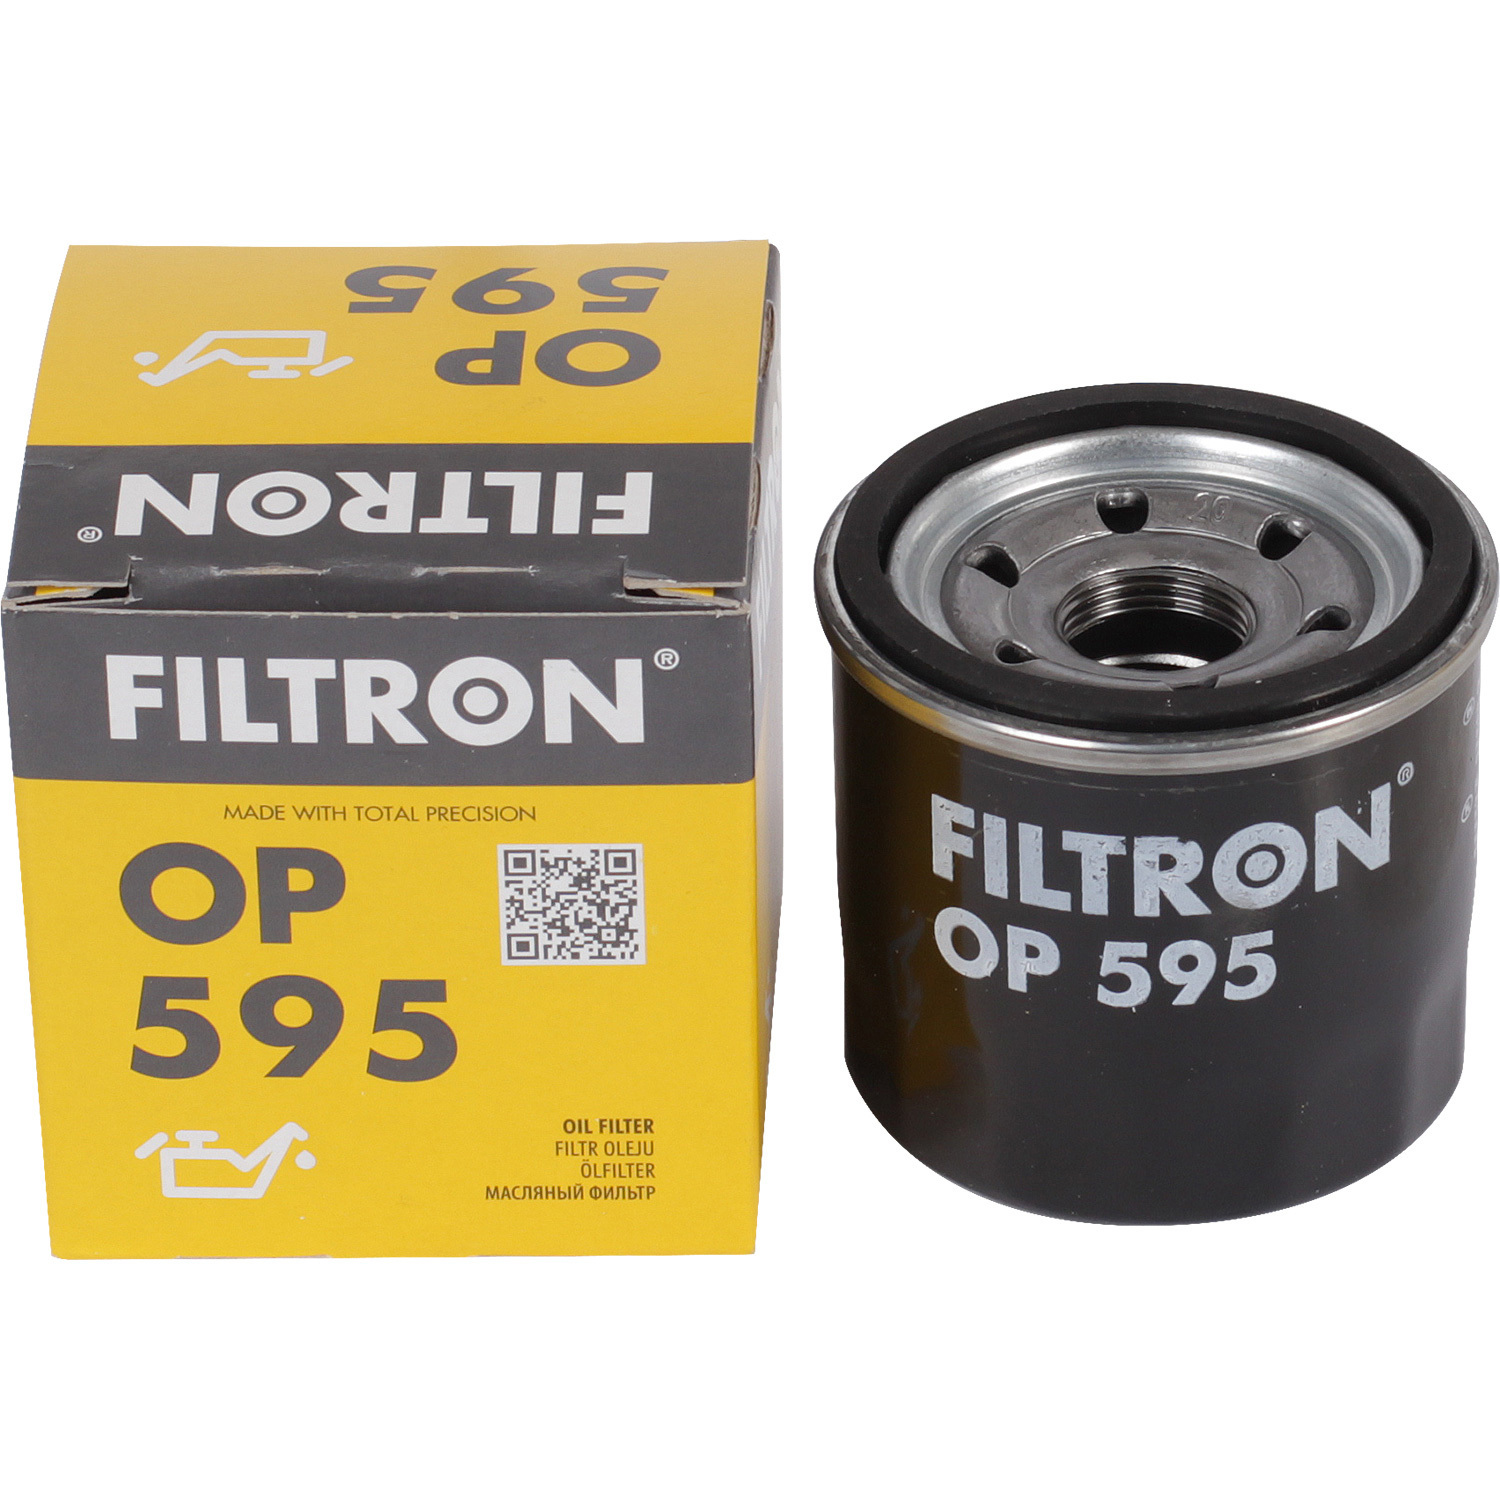 Фильтры Filtron Фильтр масляный Filtron OP595